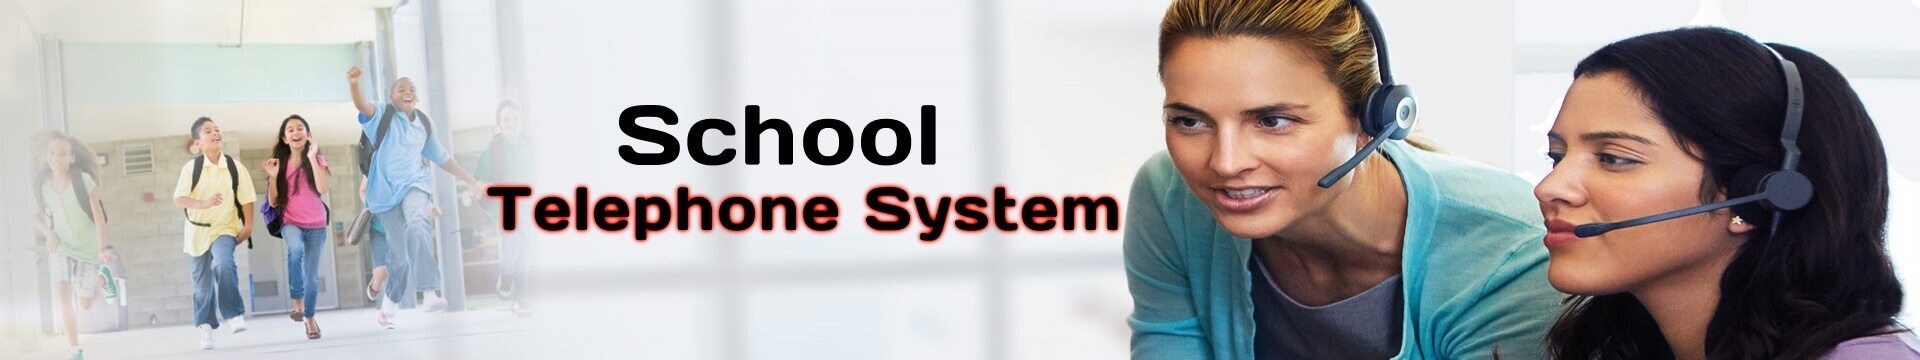 School Telephone System Qatar